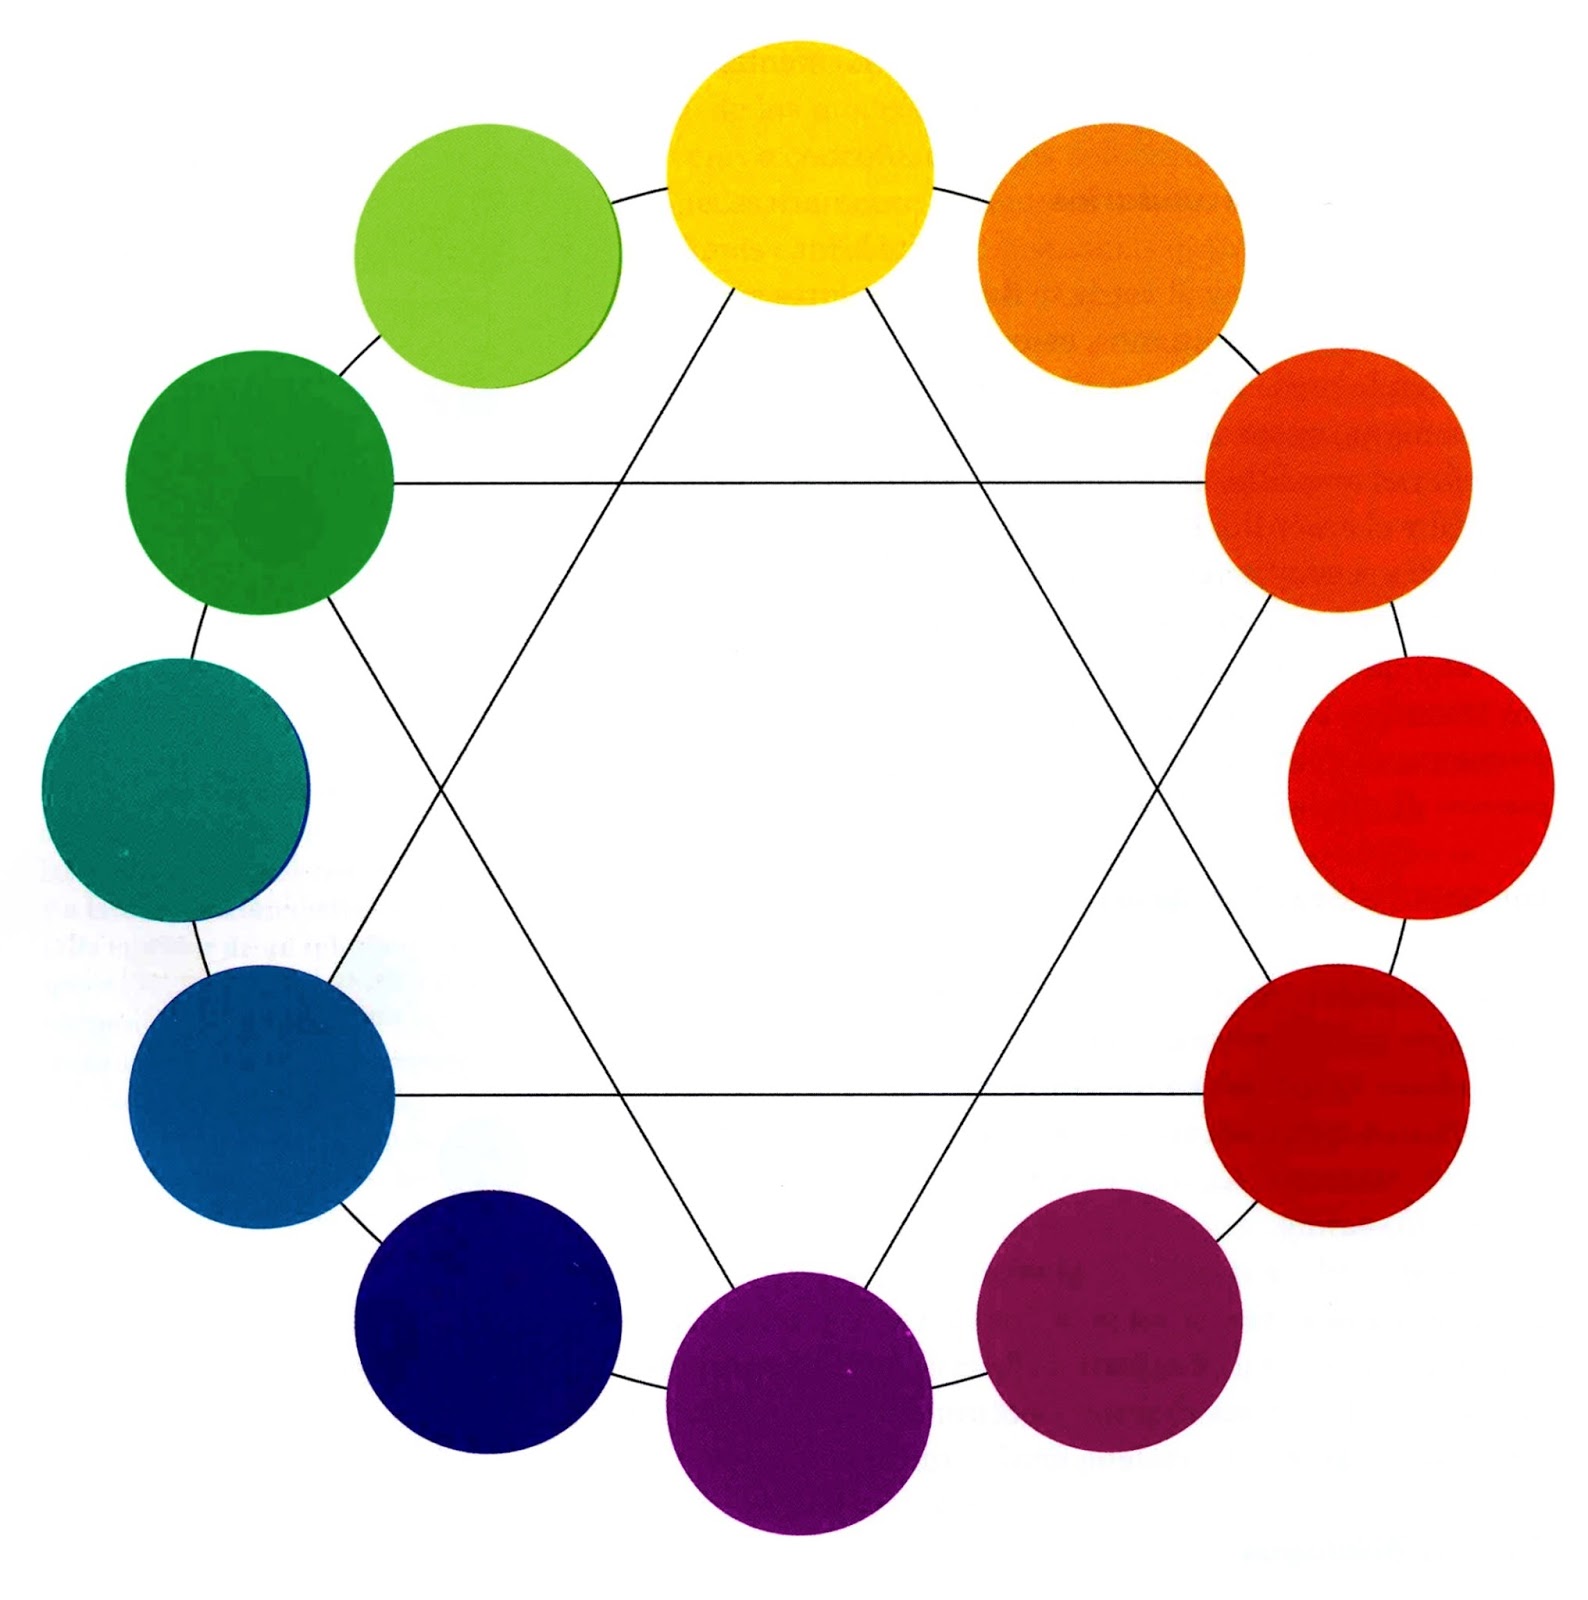 Круги едят других кругов. Круги разных цветов. Цветовой круг. Круг цвета. Круги разного цвета.